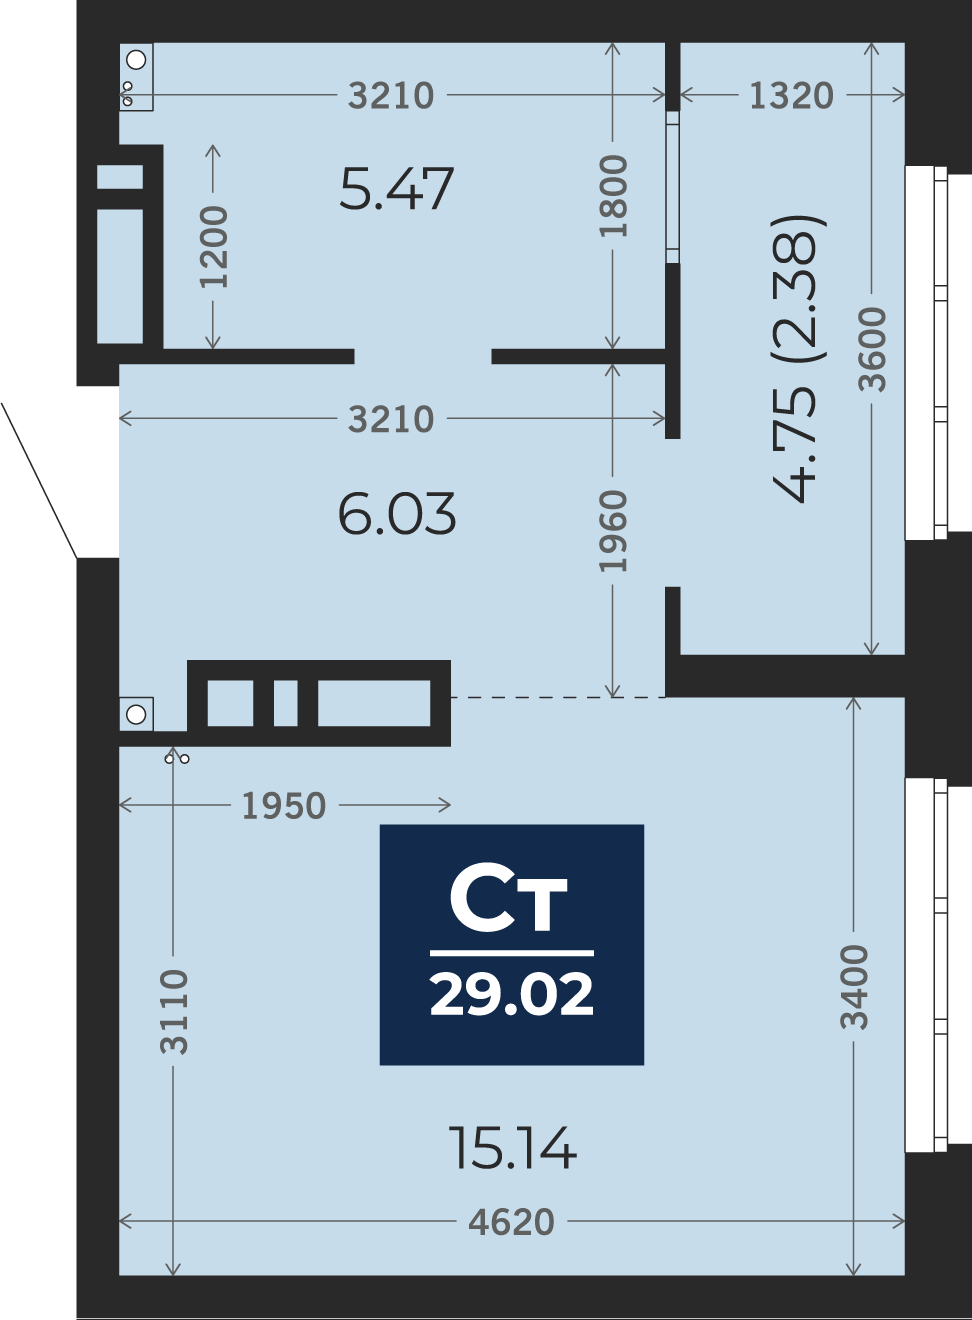 Квартира № 347, Студия, 29.02 кв. м, 8 этаж